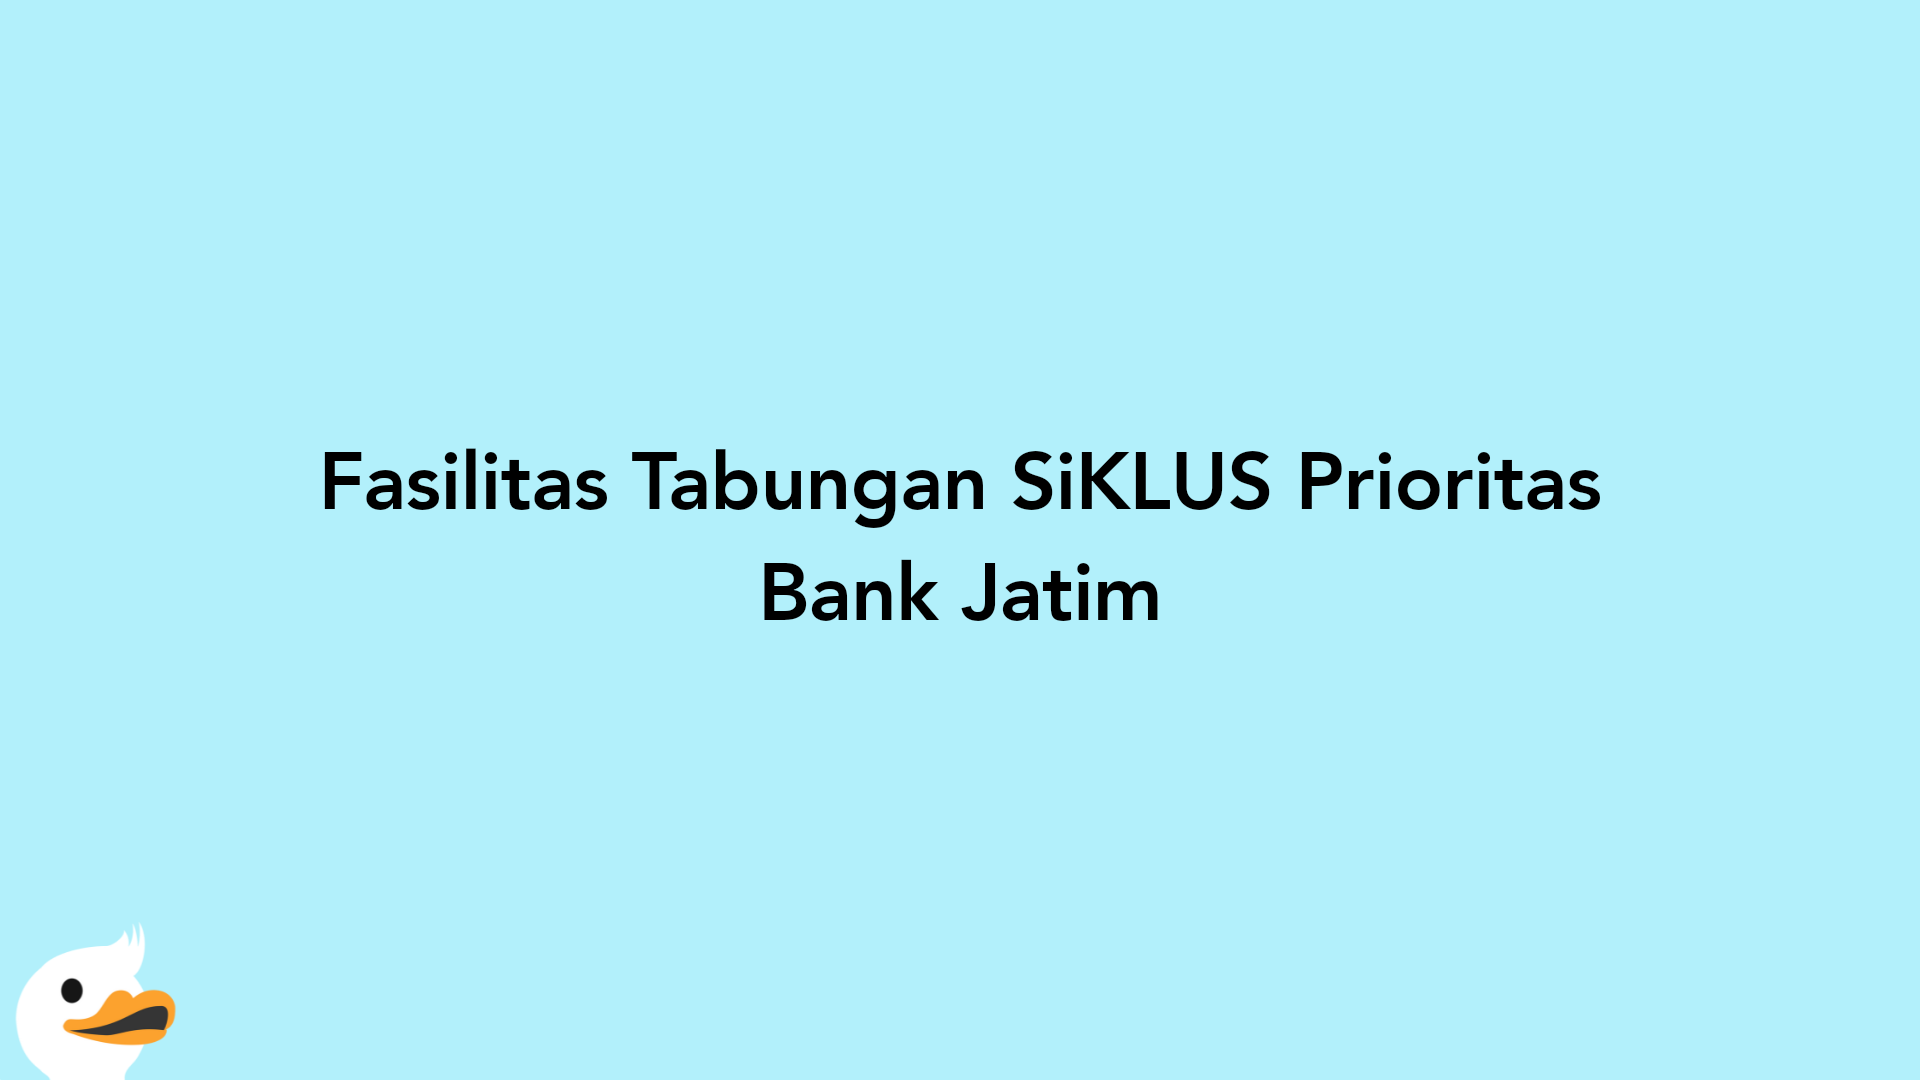 Fasilitas Tabungan SiKLUS Prioritas Bank Jatim